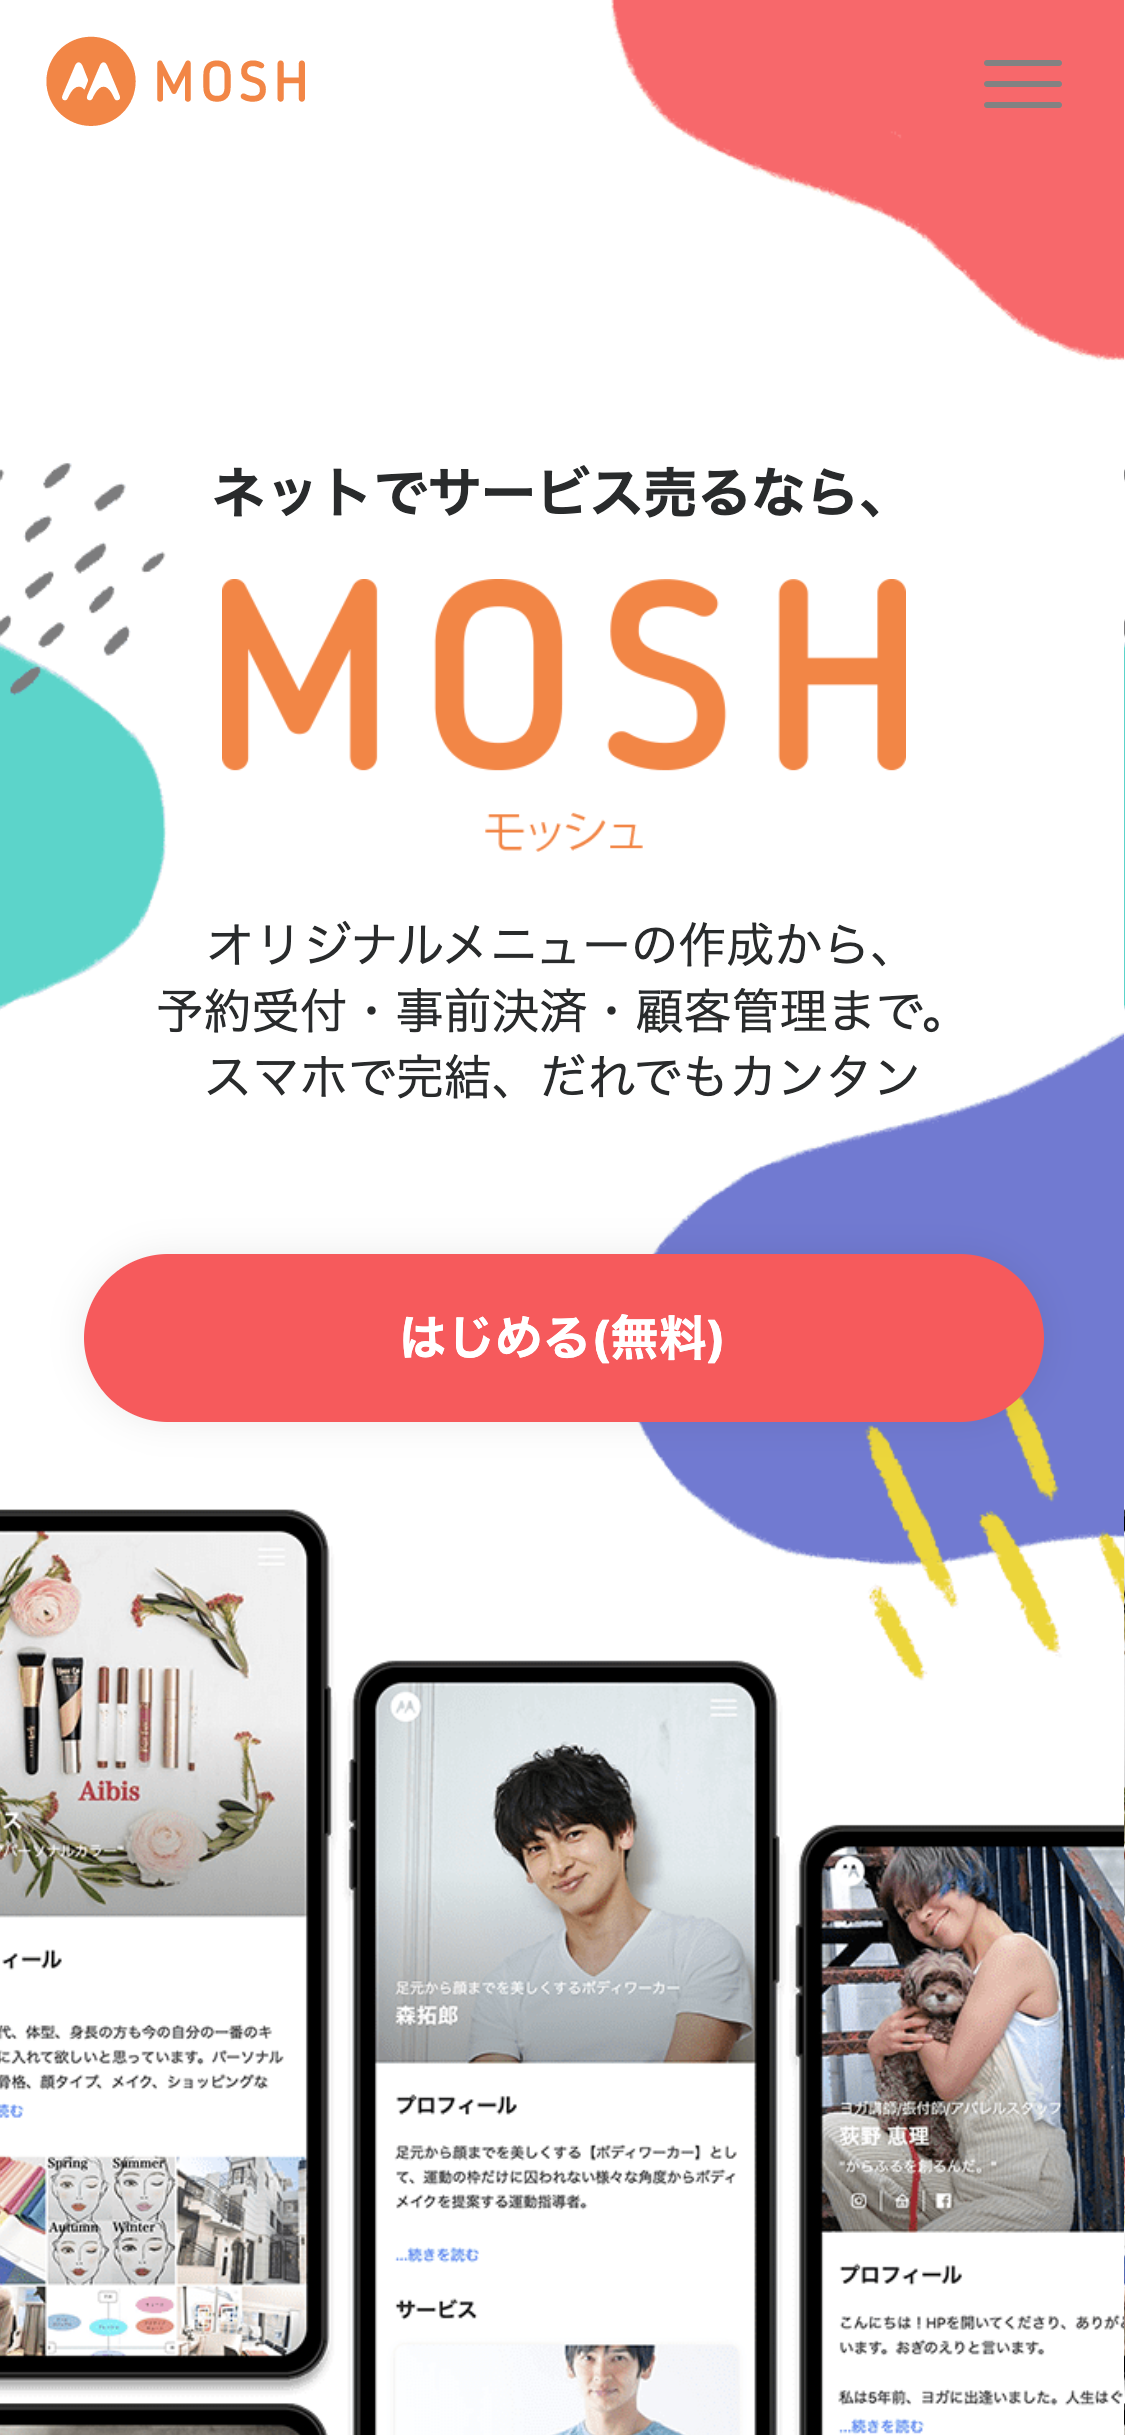 お笑い芸人 - サンプル2 | MOSH (モッシュ)